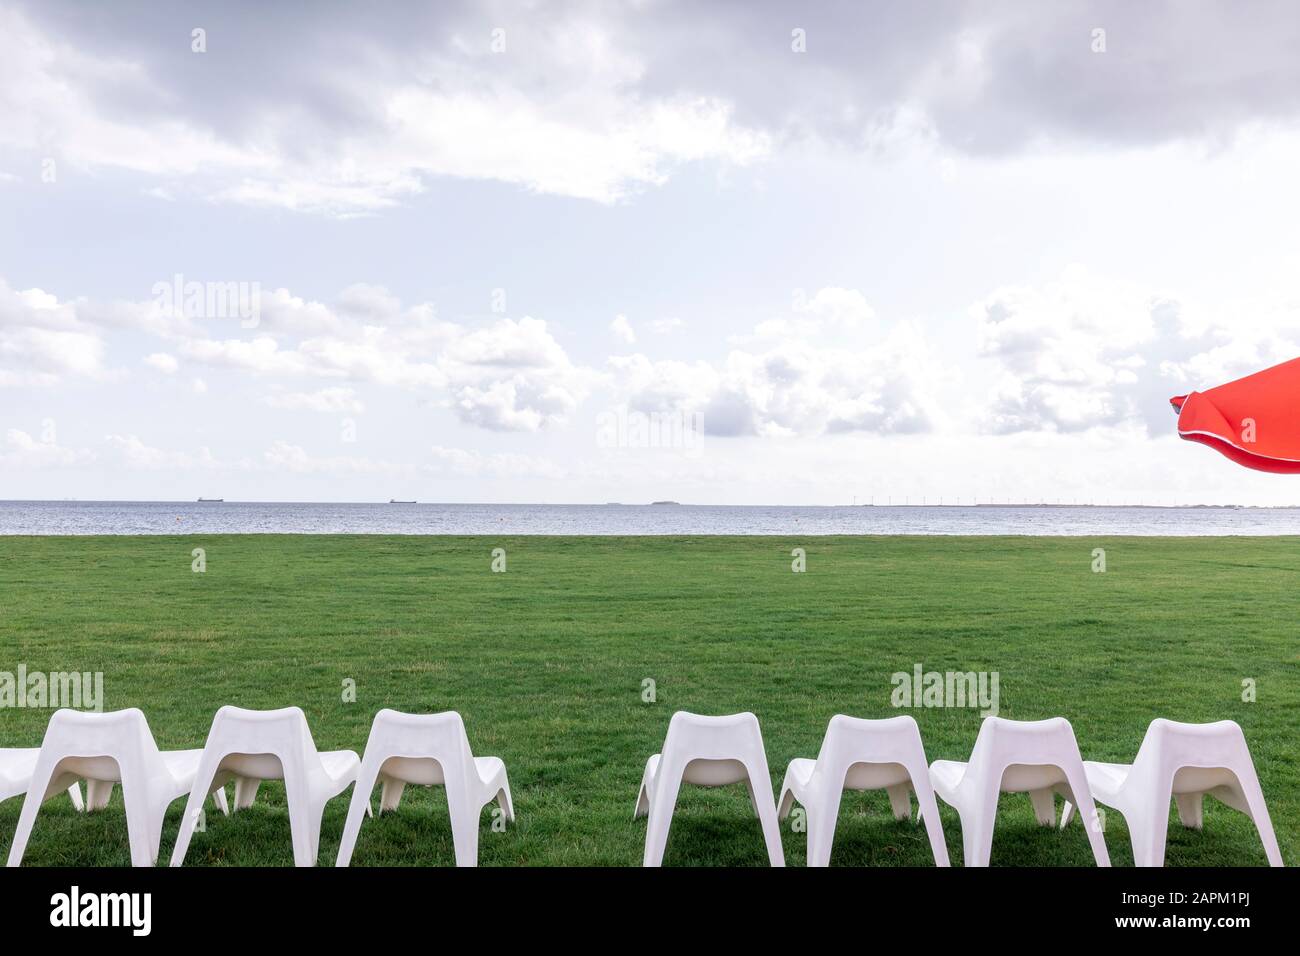 Denmark, Charlottenlund, White empty chairs on green lawn with Oresund strait in background Stock Photo